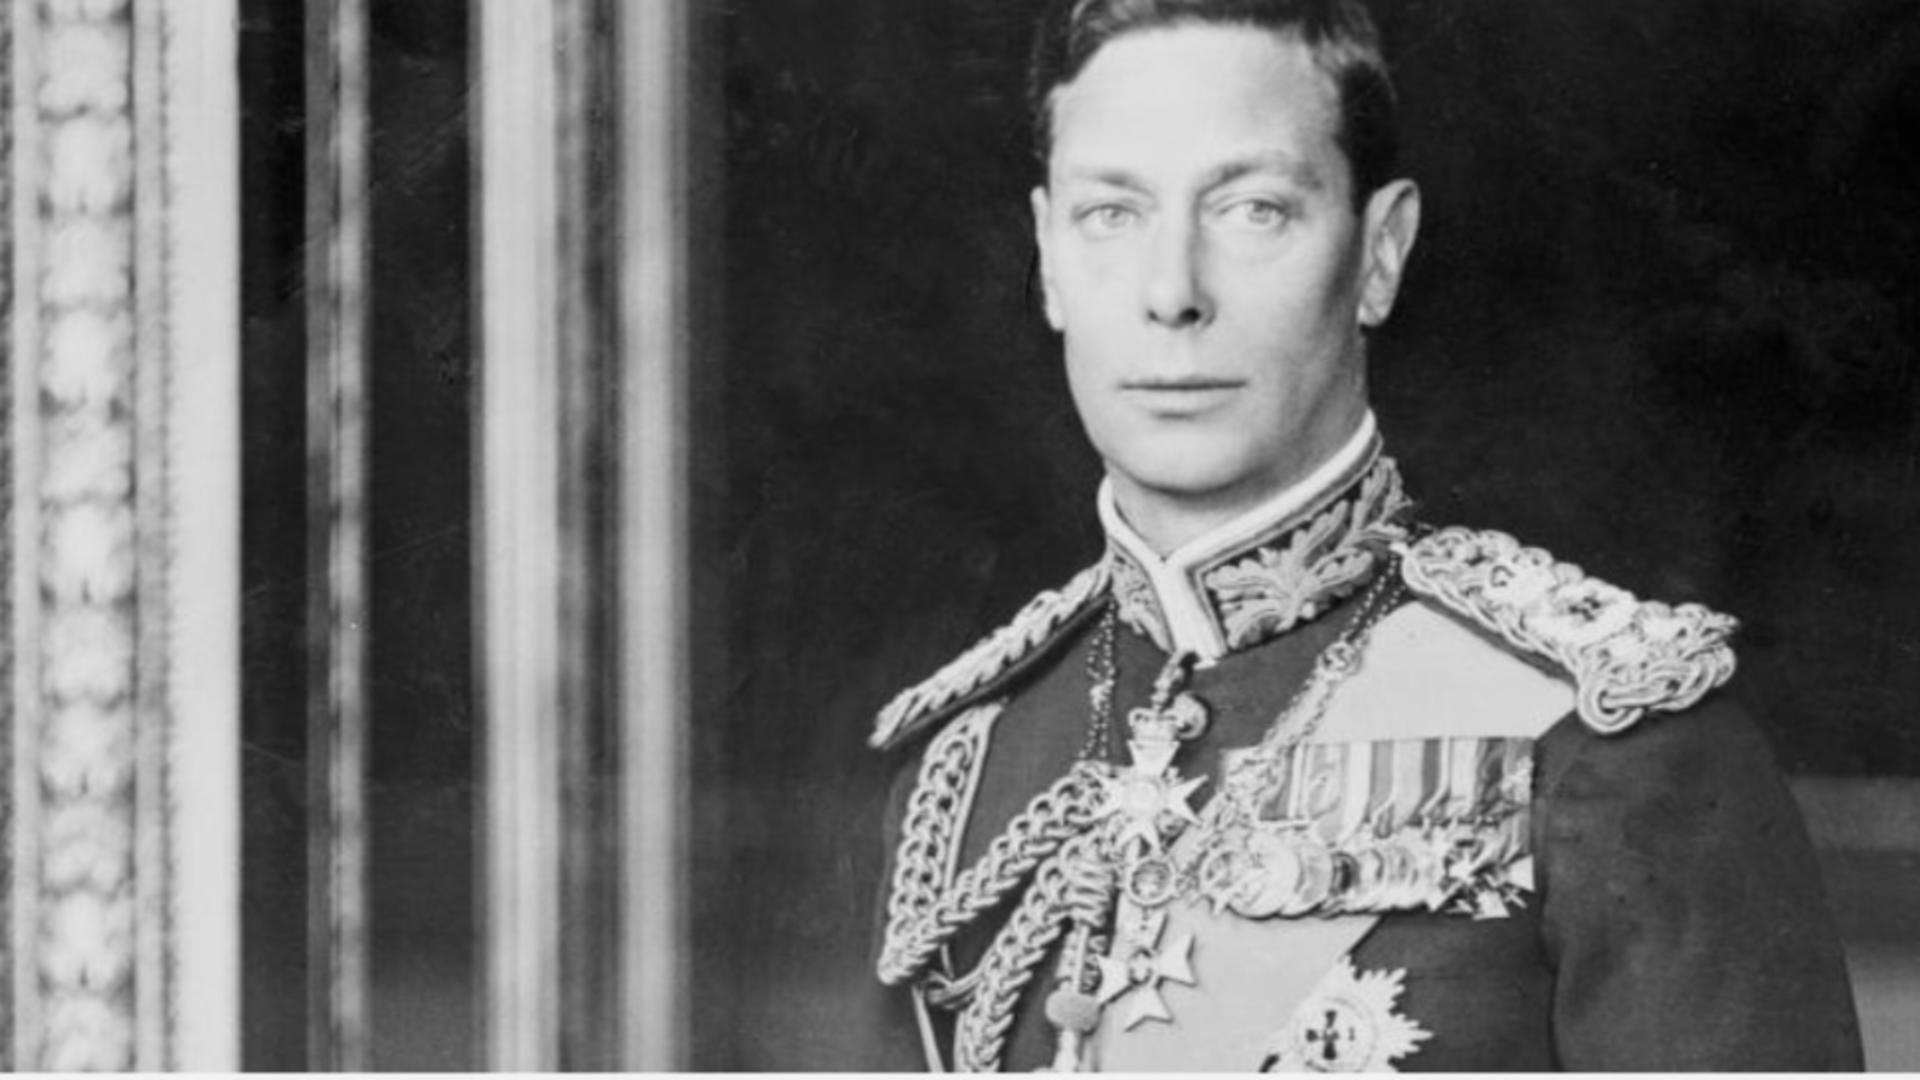 Regele britanic, bunic al lui Charlesm care a murit din cauza cancerului la doar 56 de ani. Foto/Public